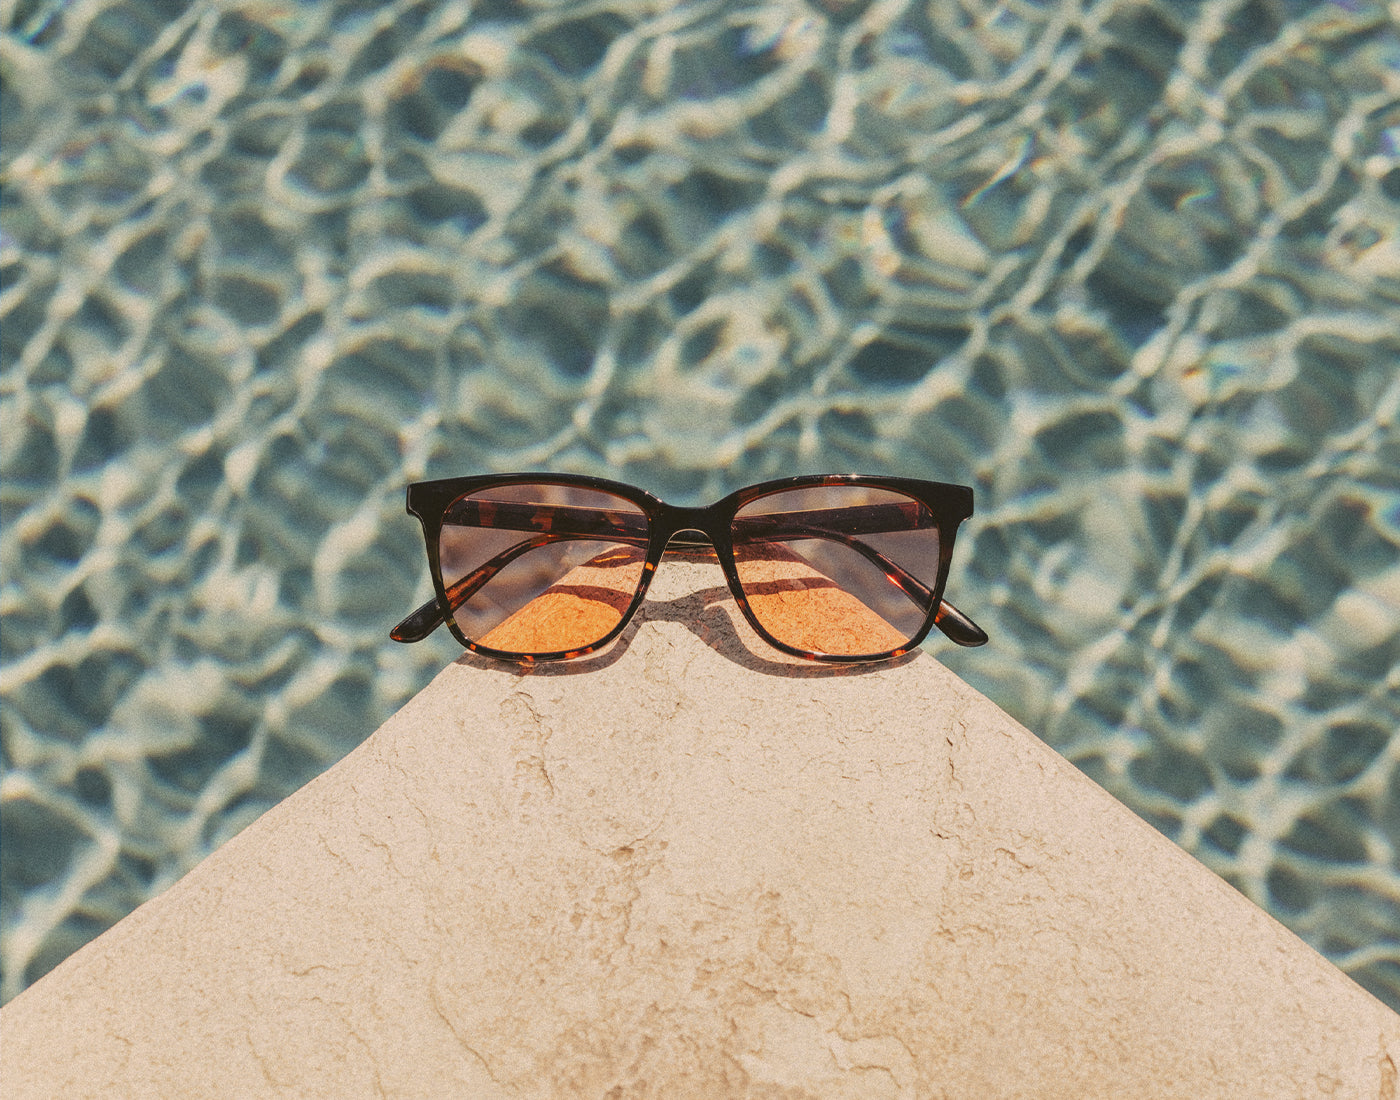 sunski ventana sunglasses on a ledge by a pool 